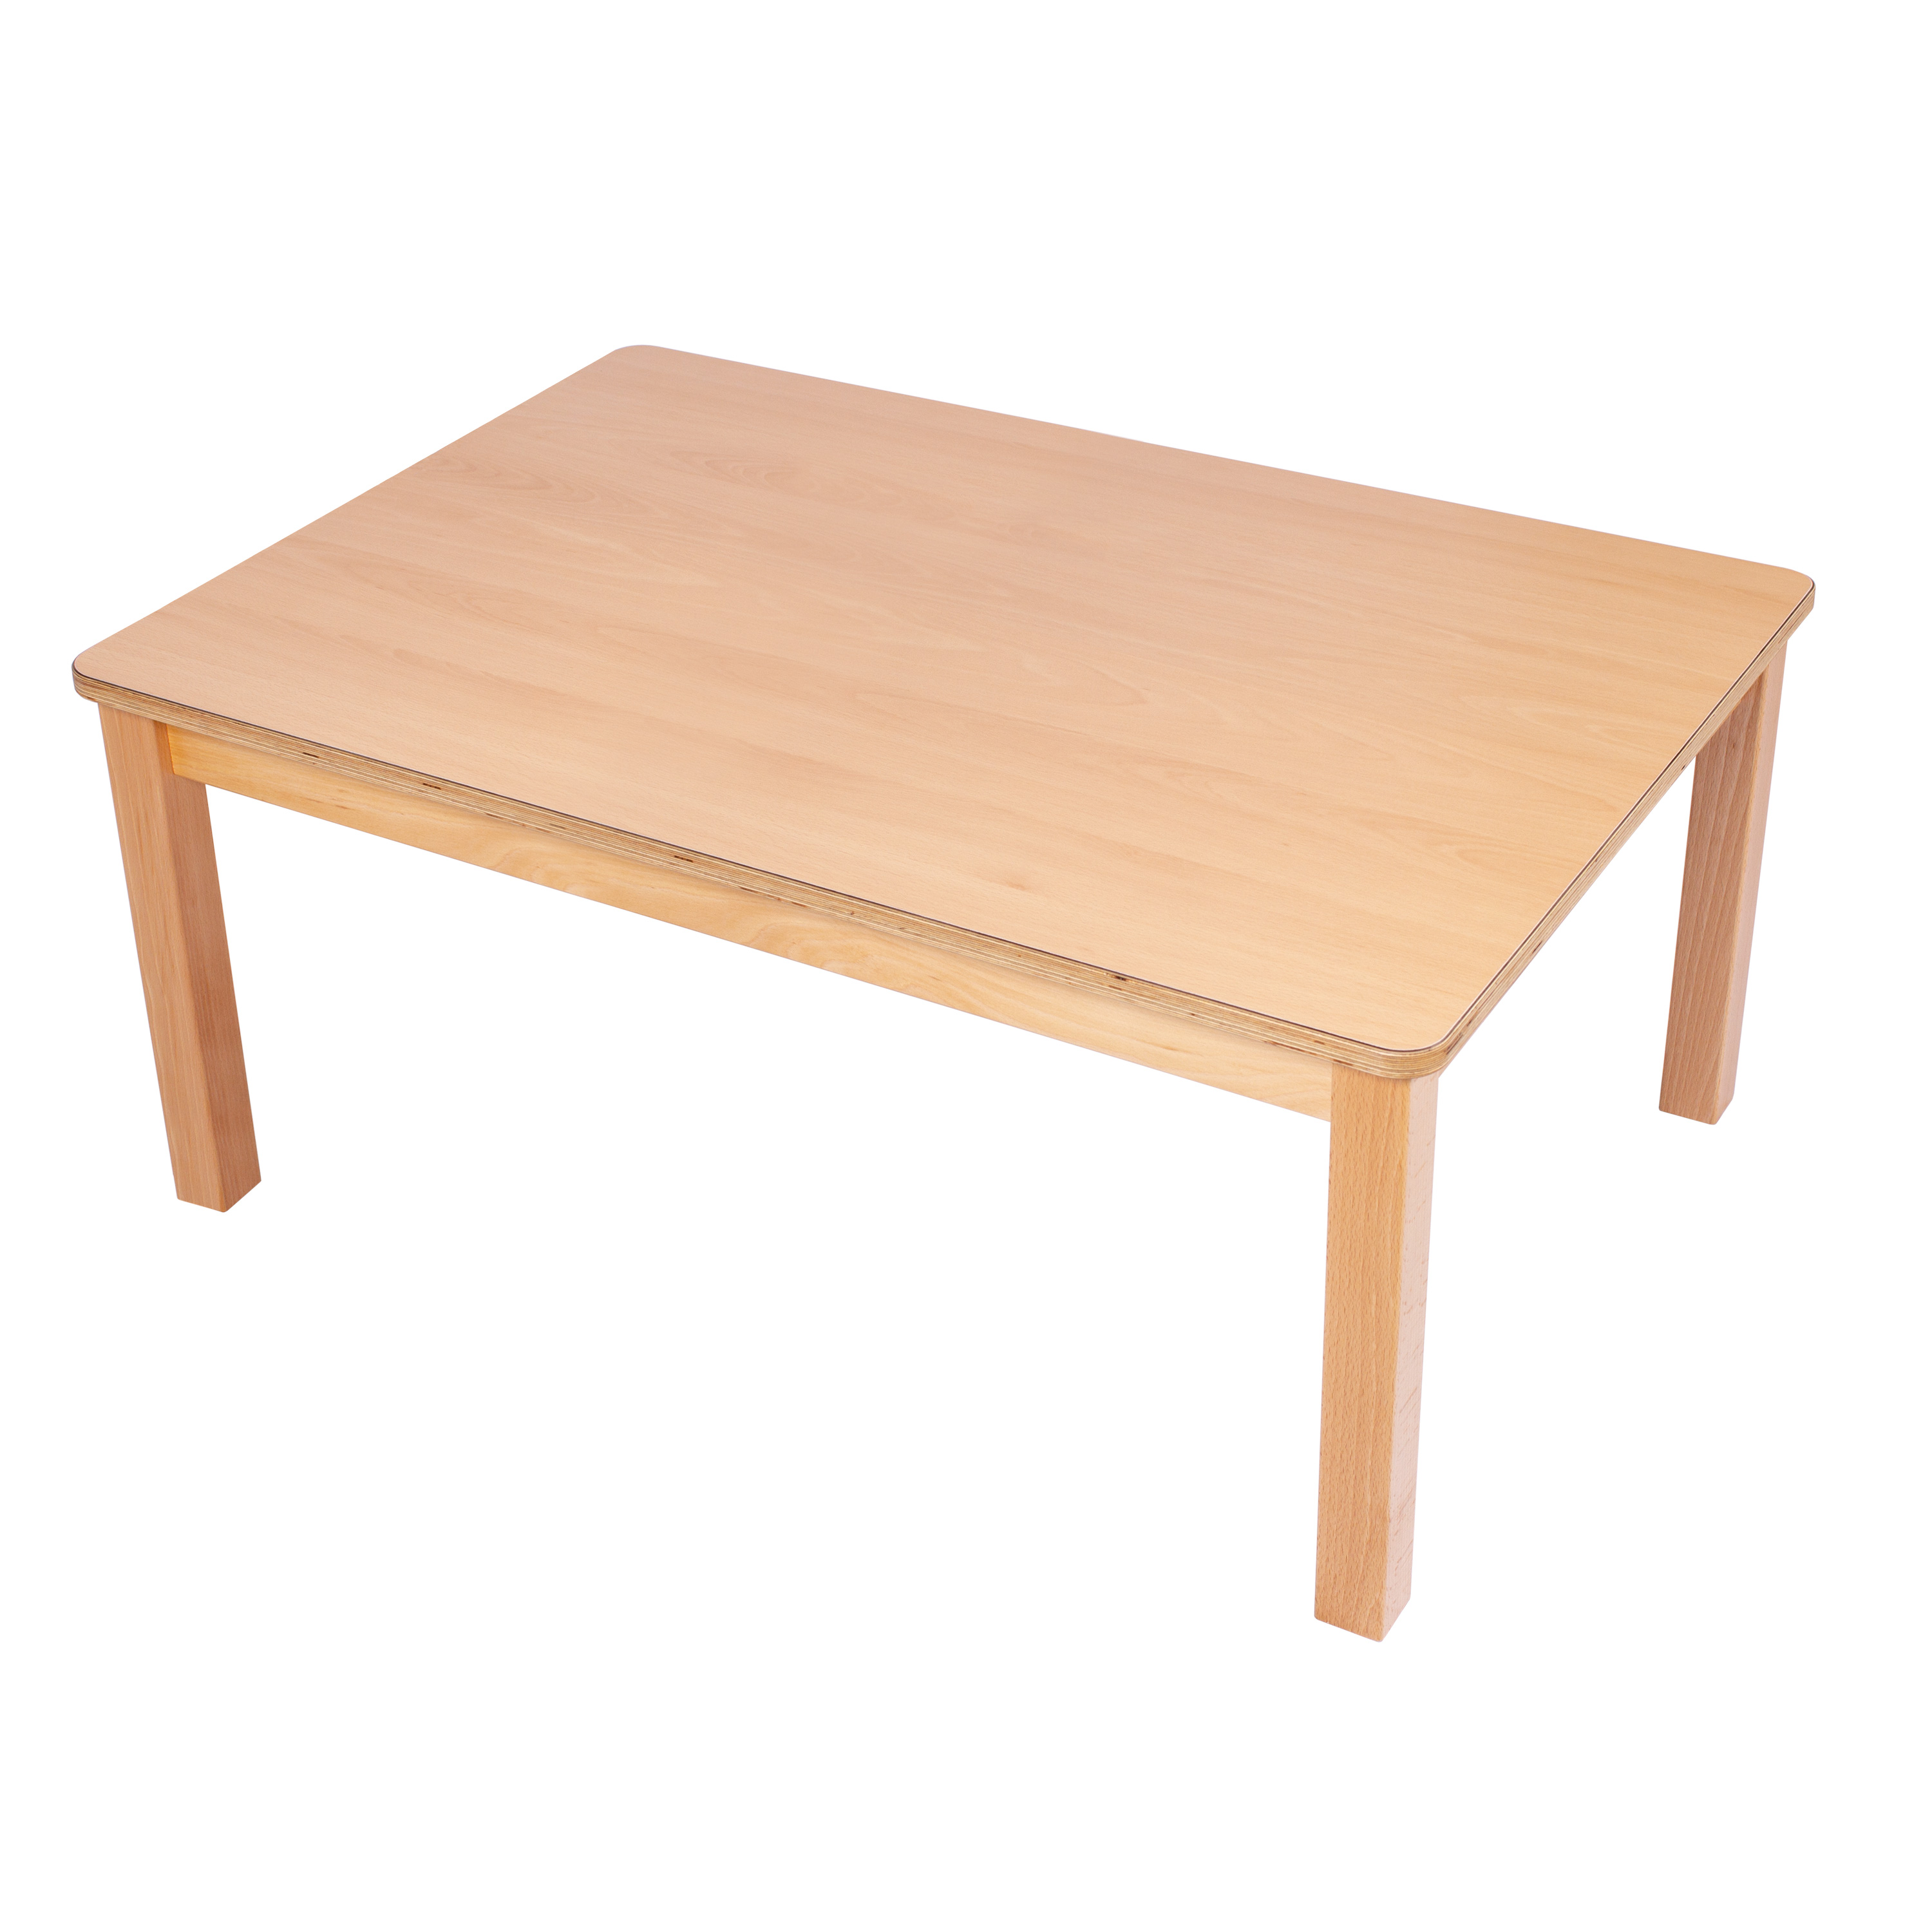 U3-Rechteck-Tisch 120 x 60 cm, Ecken gerundet, H: 40 cm